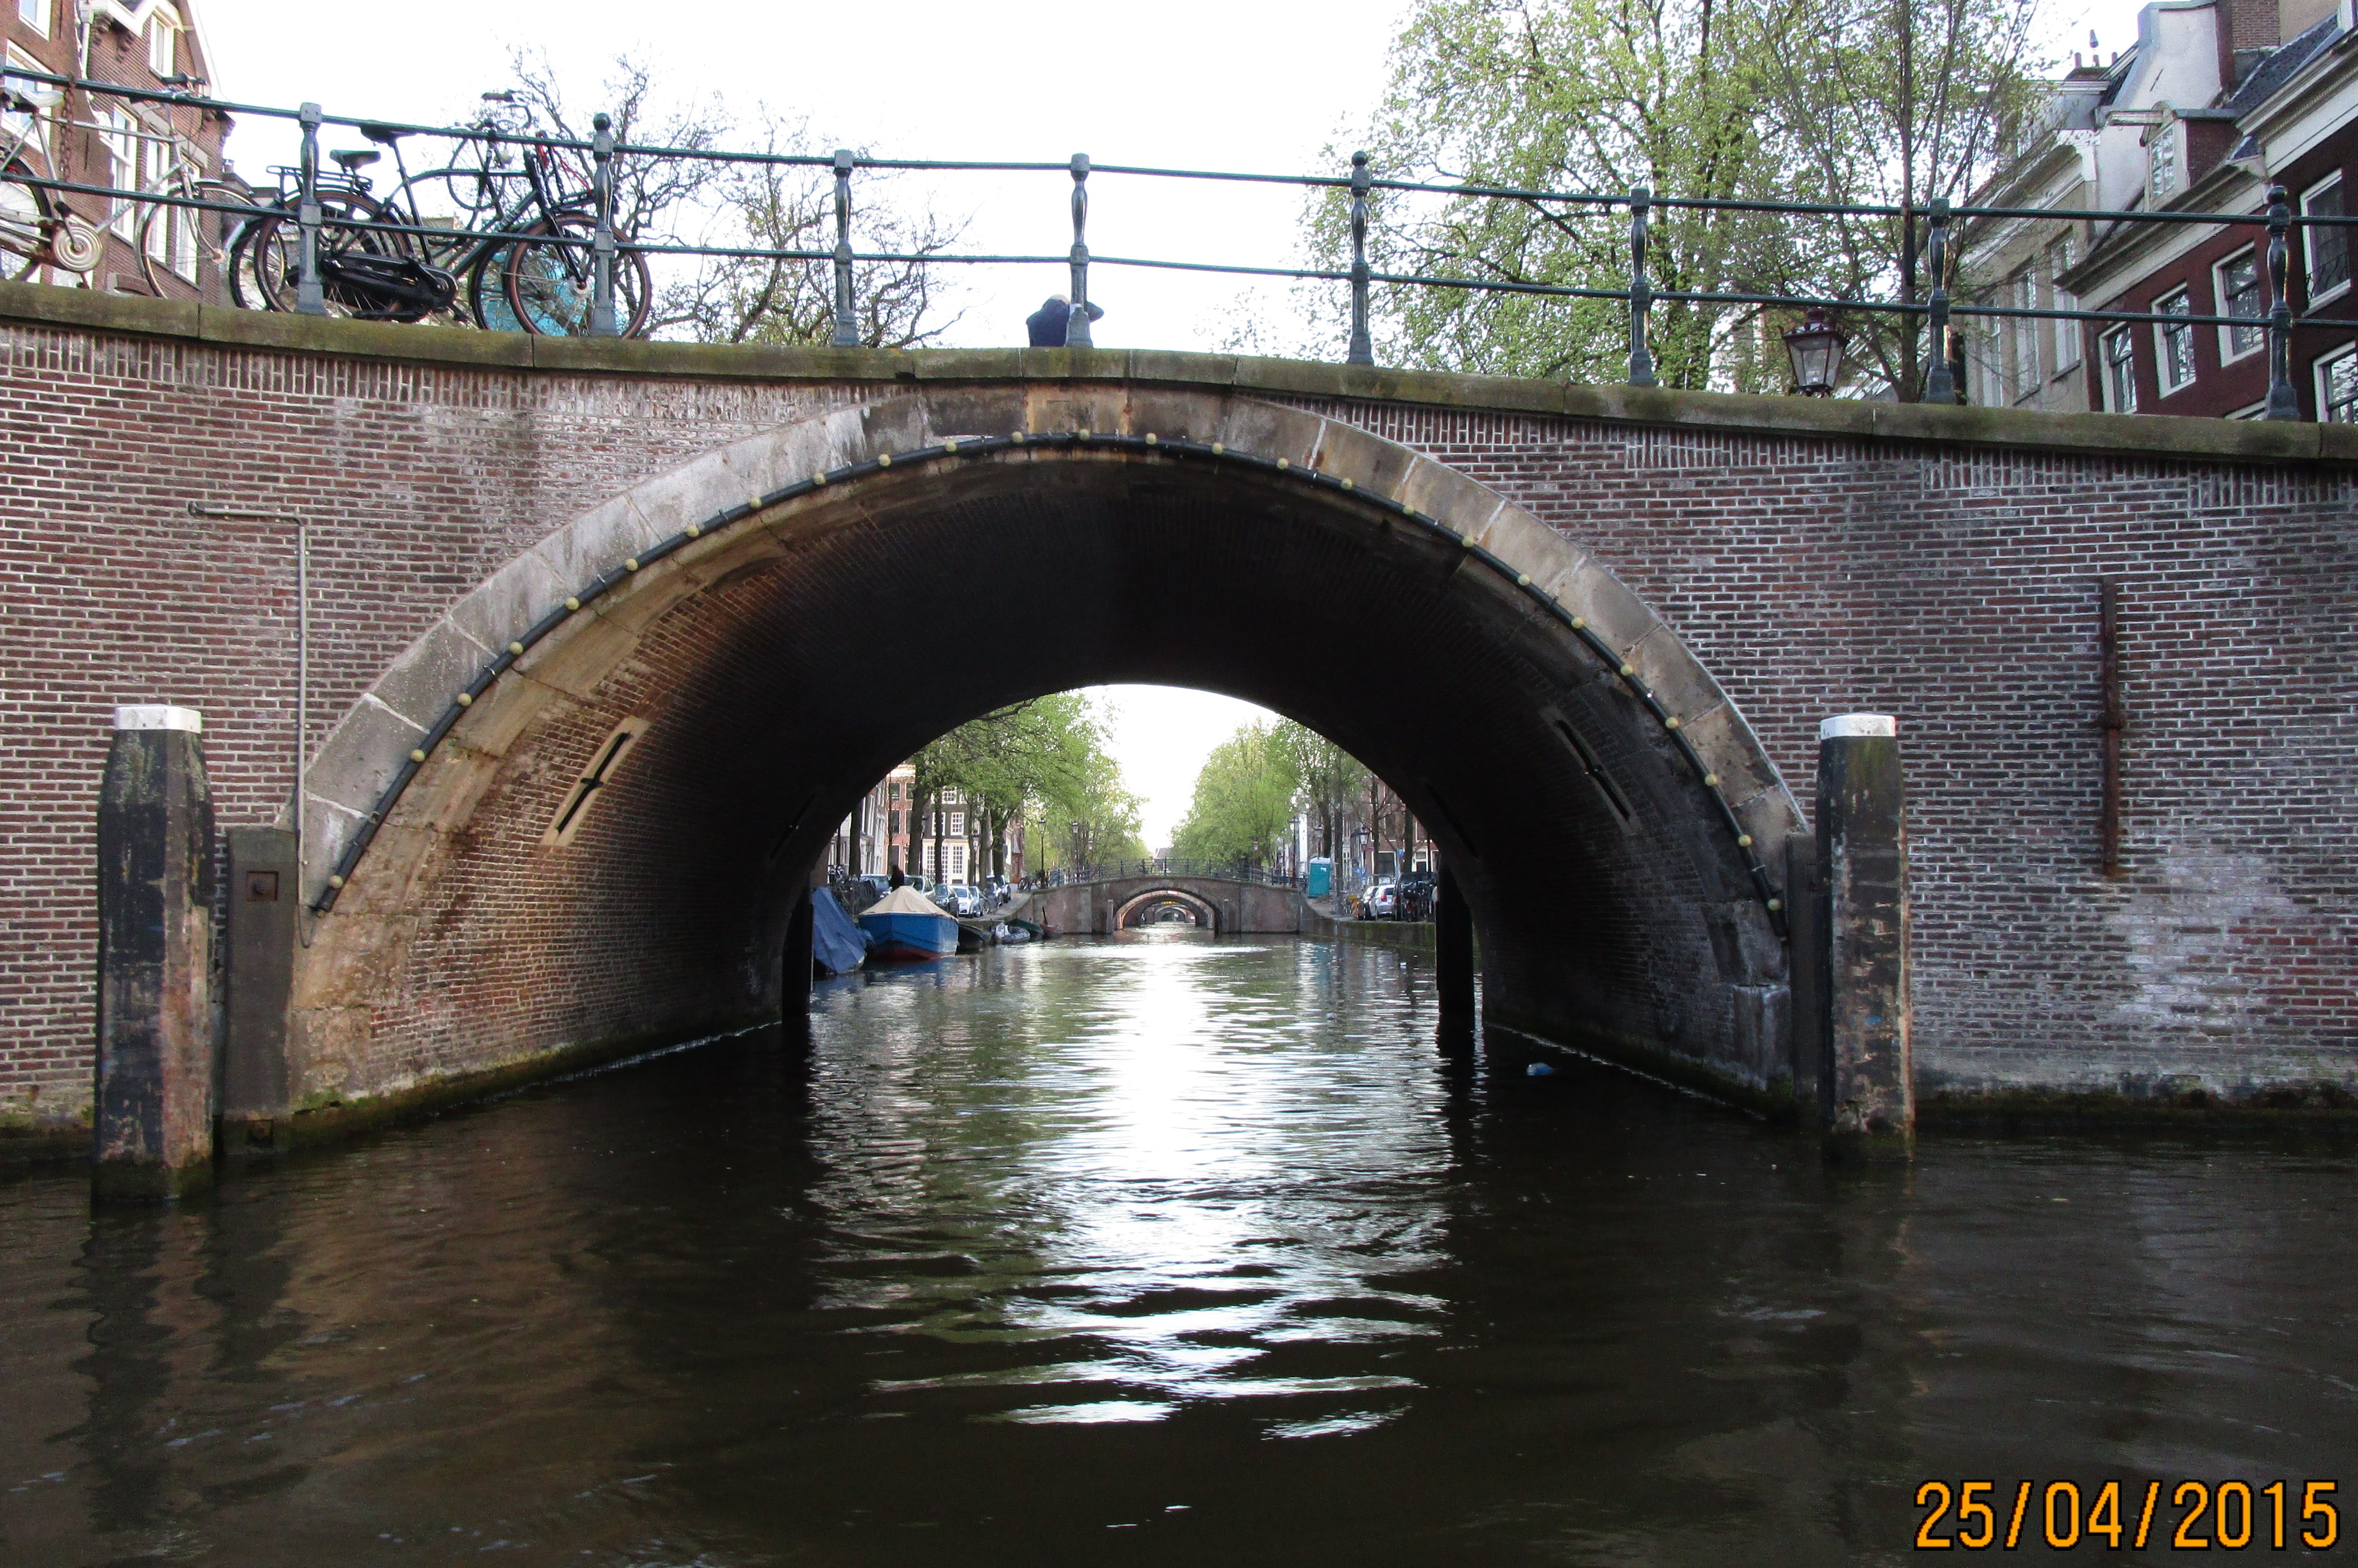 Plavba lod v Amsterdamu VI. - msto stovek most